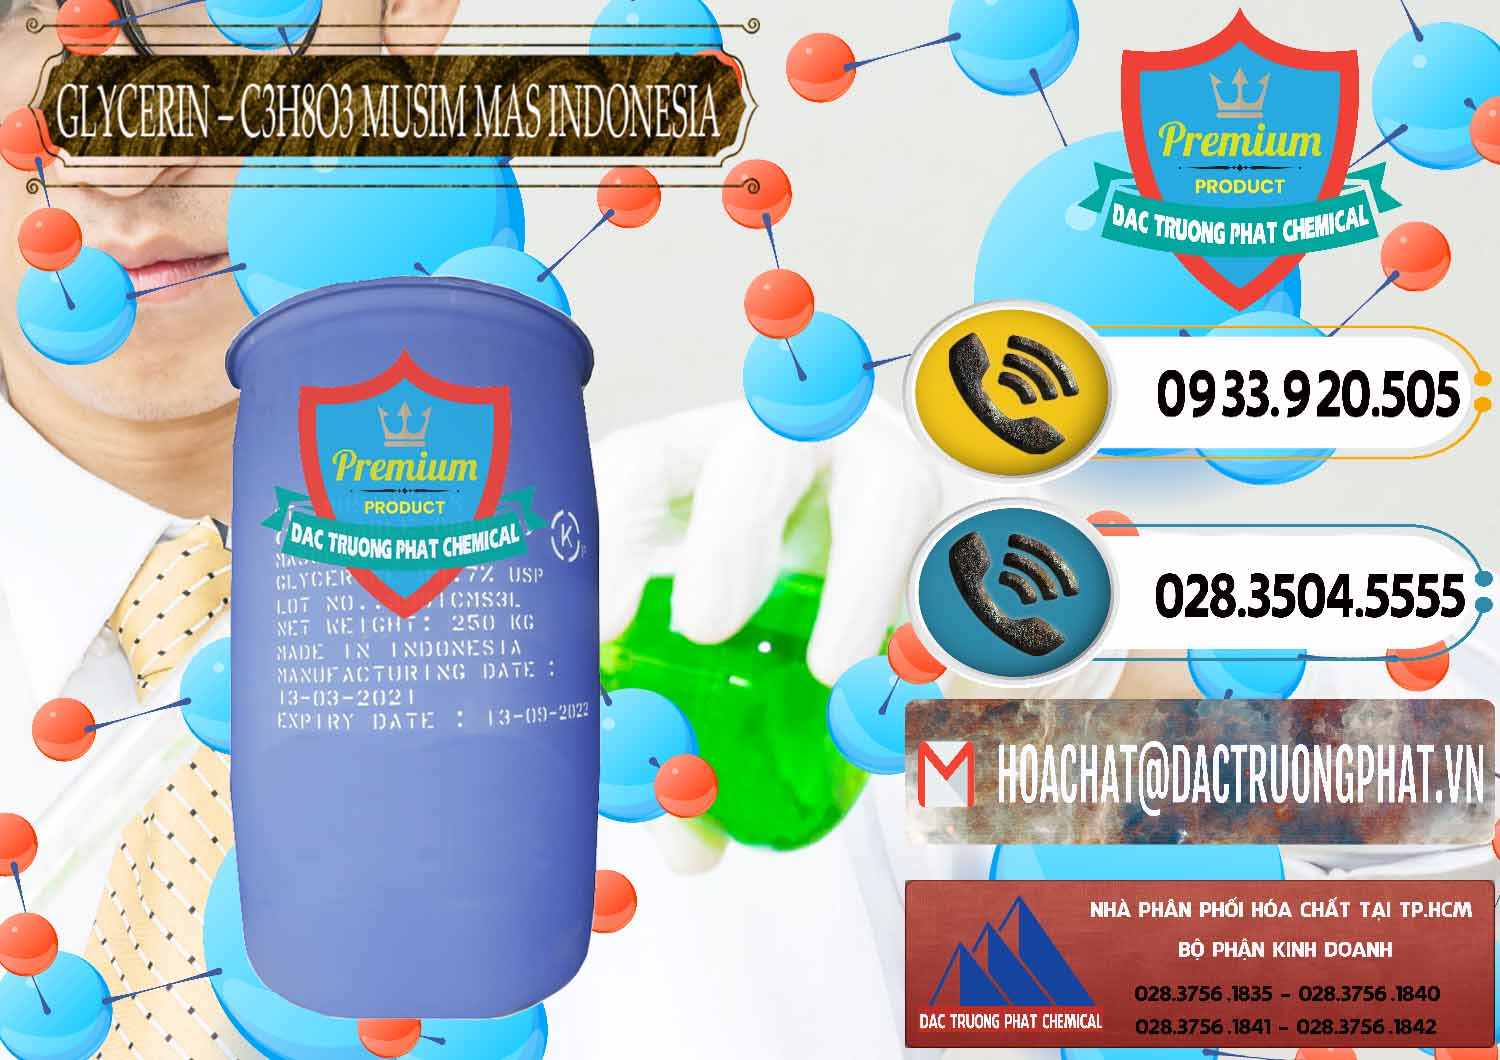 Công ty bán và cung cấp Glycerin – C3H8O3 99.7% Musim Mas Indonesia - 0272 - Đơn vị chuyên bán _ cung cấp hóa chất tại TP.HCM - hoachatdetnhuom.vn